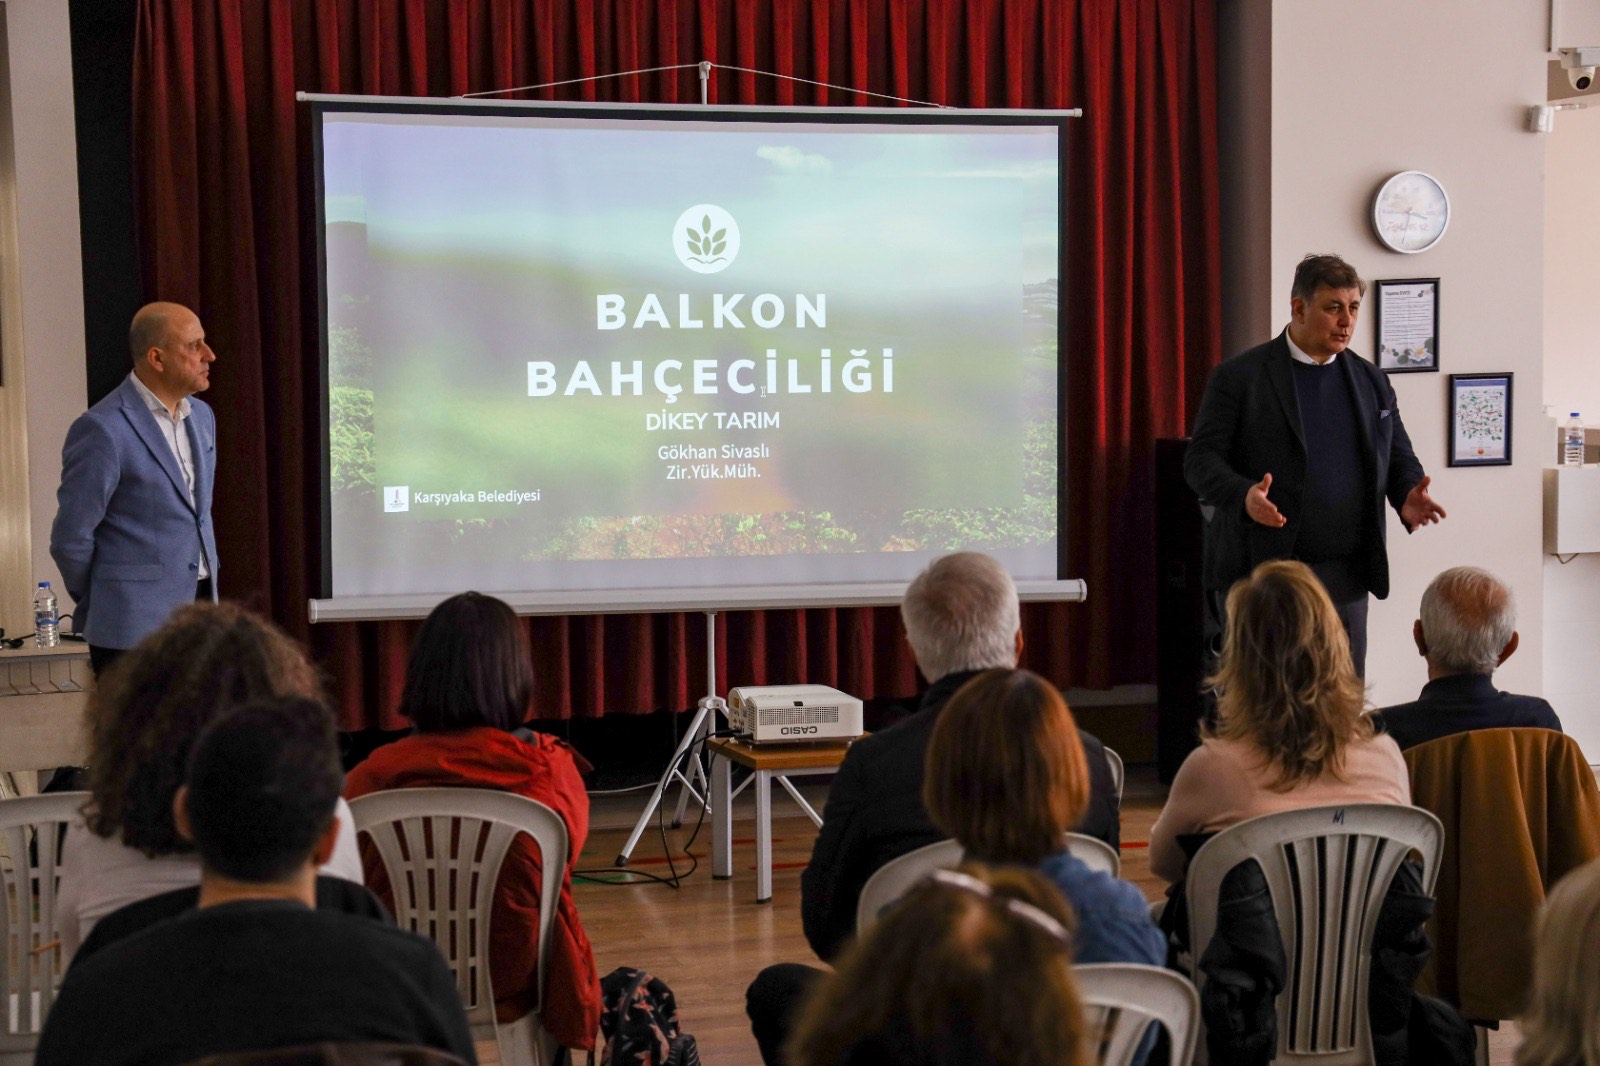 Karşıyaka Belediyesi’nden Balkon Bahçeciliği Eğitimi